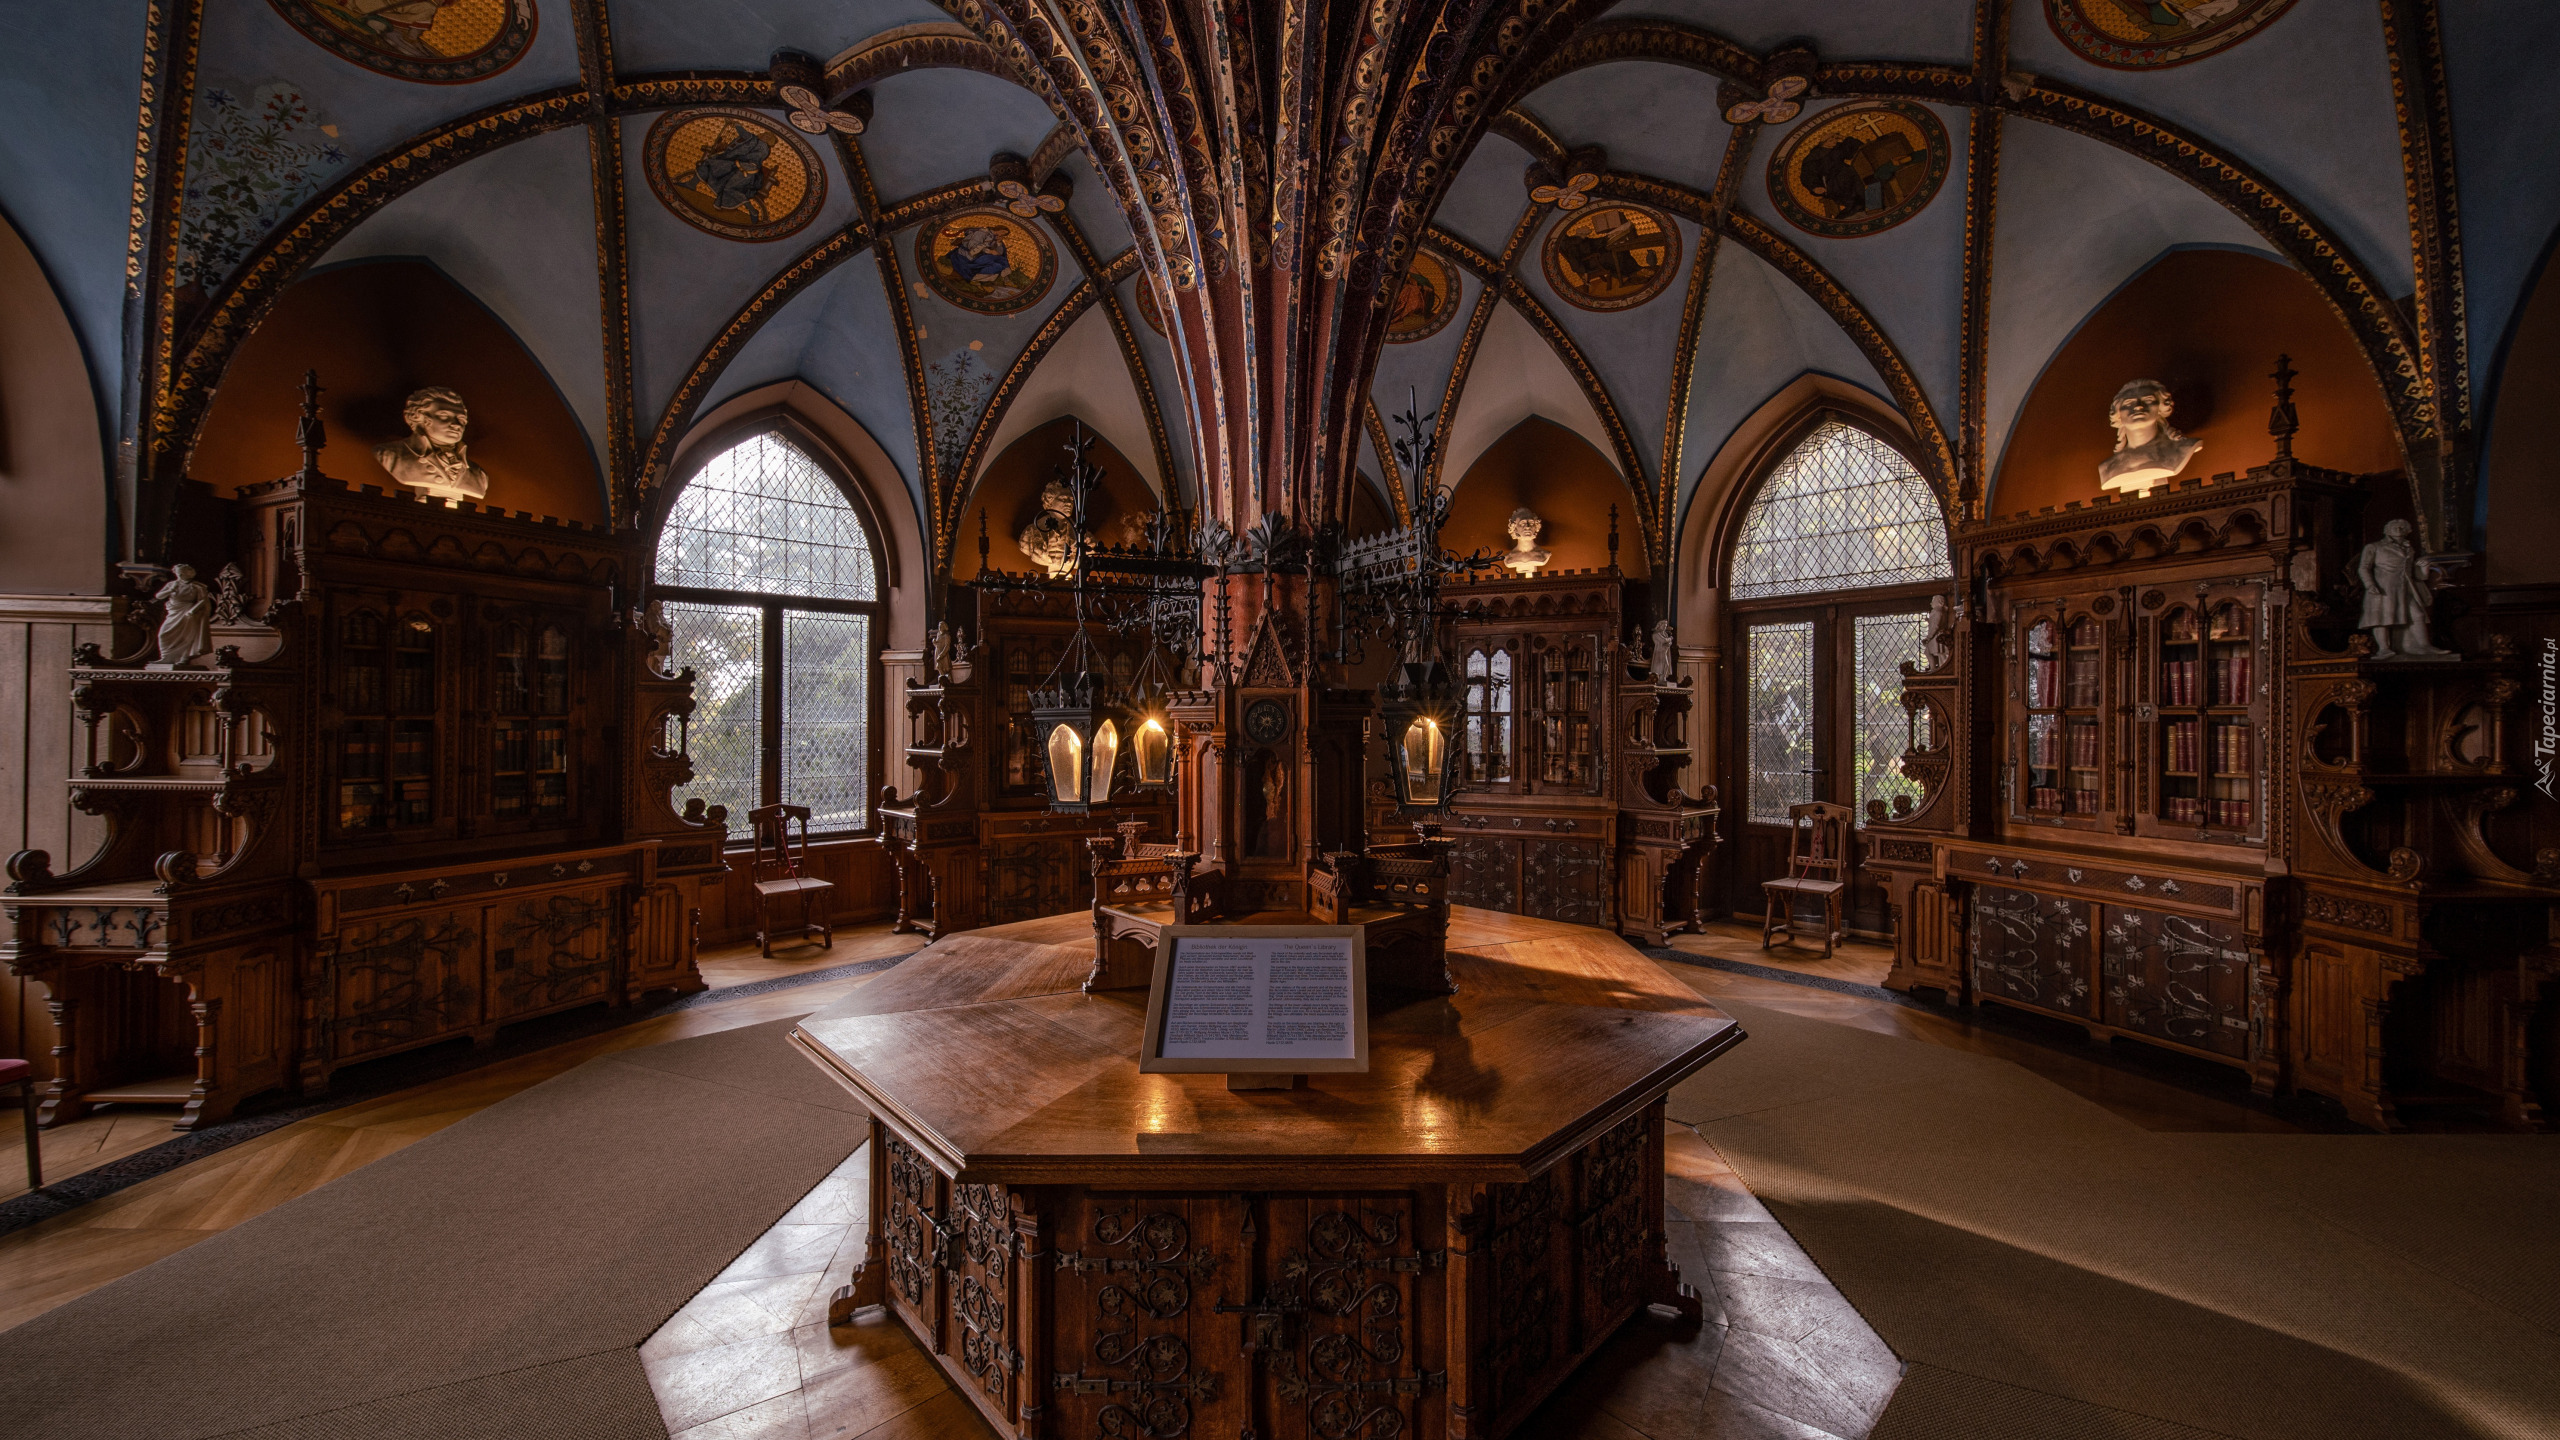 Wnętrze, Biblioteka, Zamek Marienburg, Dolna Saksonia, Niemcy